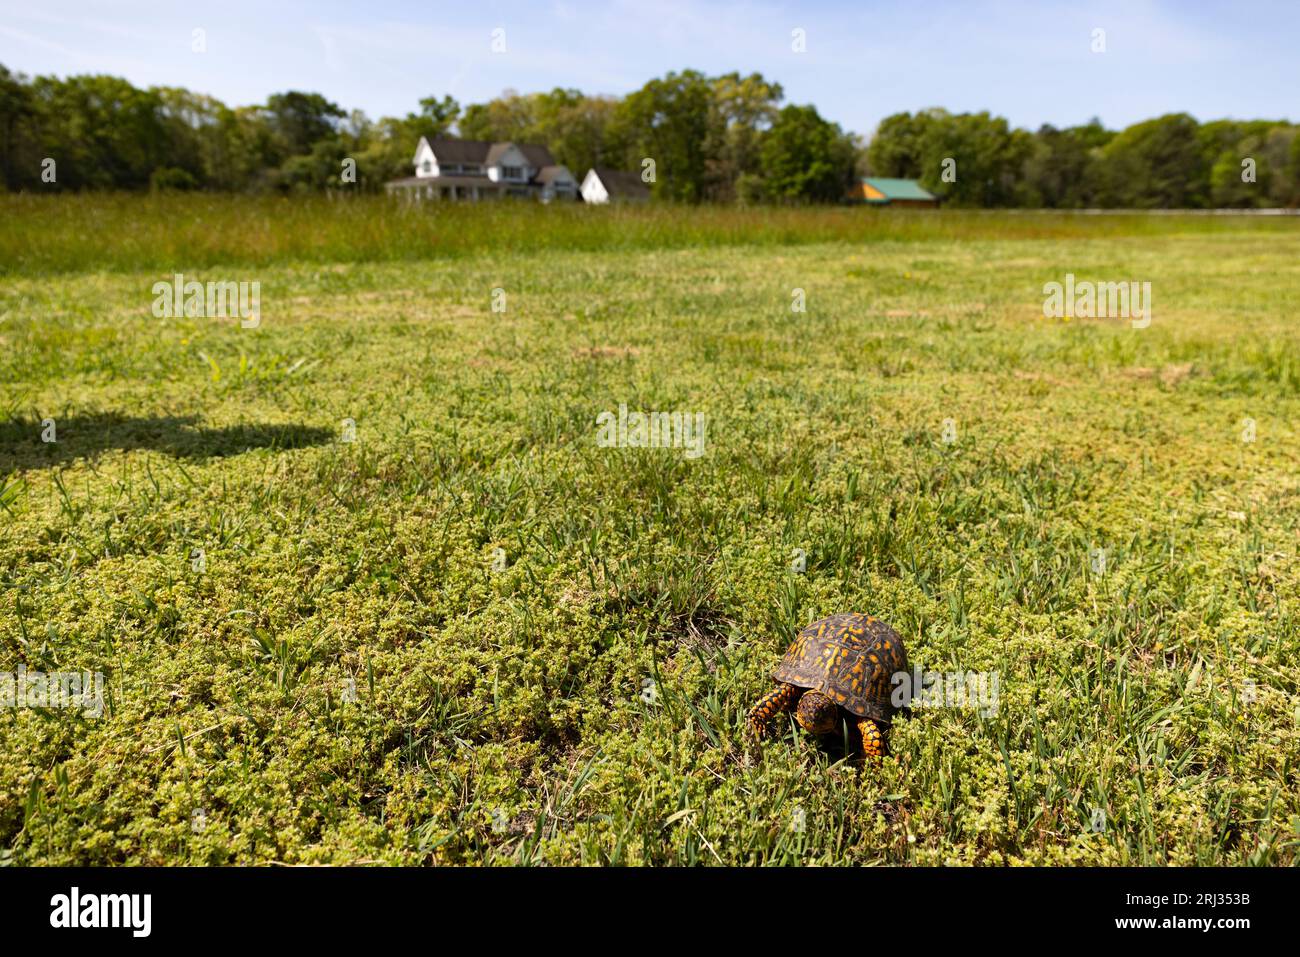 Tortuga de caja común Terrapene carolina, adulto en margen de campo, Bosque Estatal Belleplain, Nueva Jersey, EE.UU., mayo Foto de stock